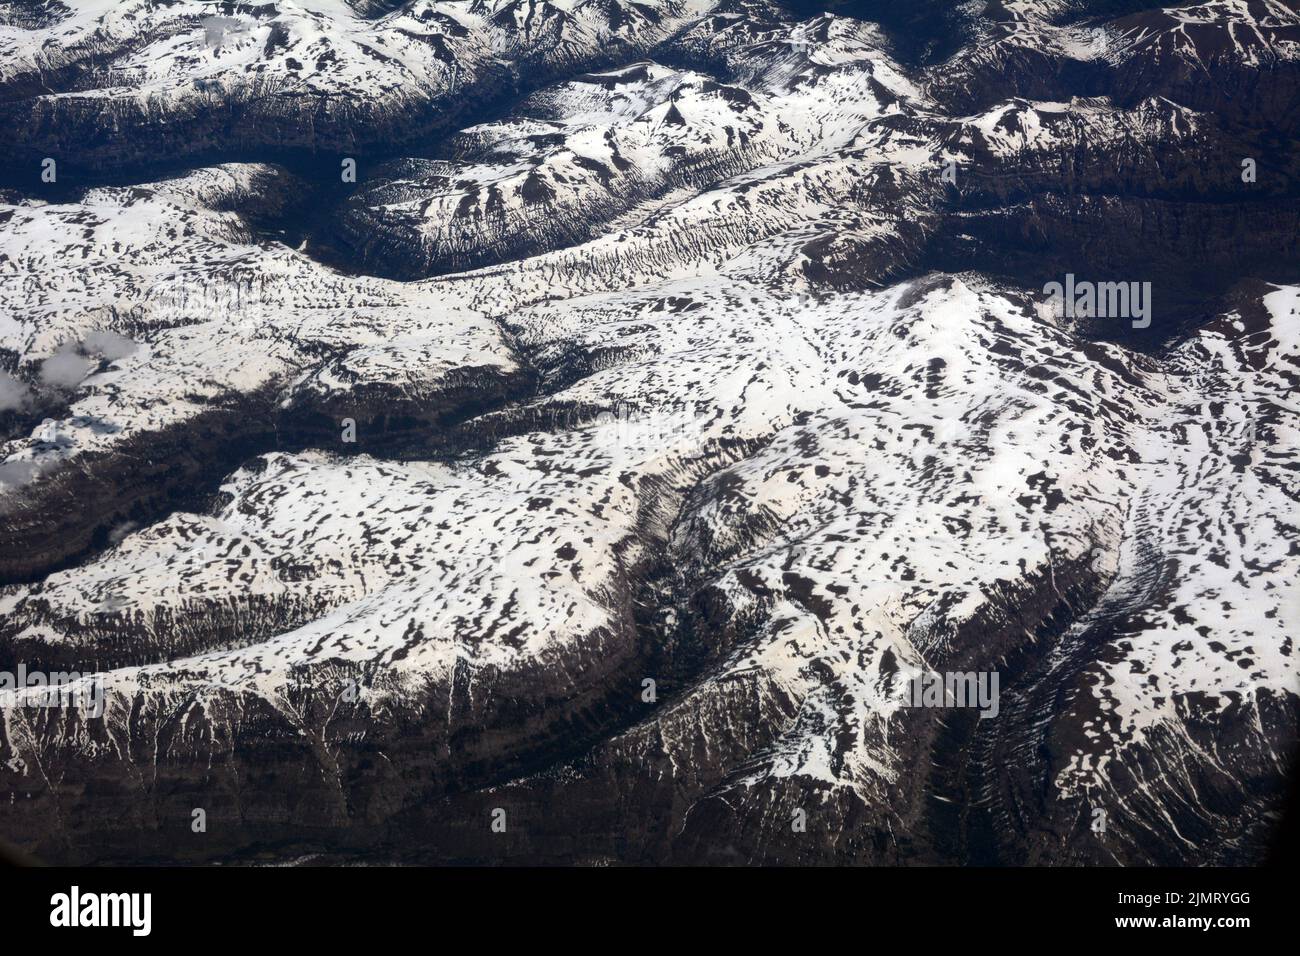 Luftaufnahme des Shoshone National Forest und der Absaroka Mountains, einem Untergebiet der Rocky Mountains, im Nordwesten von Wyoming, USA. Stockfoto